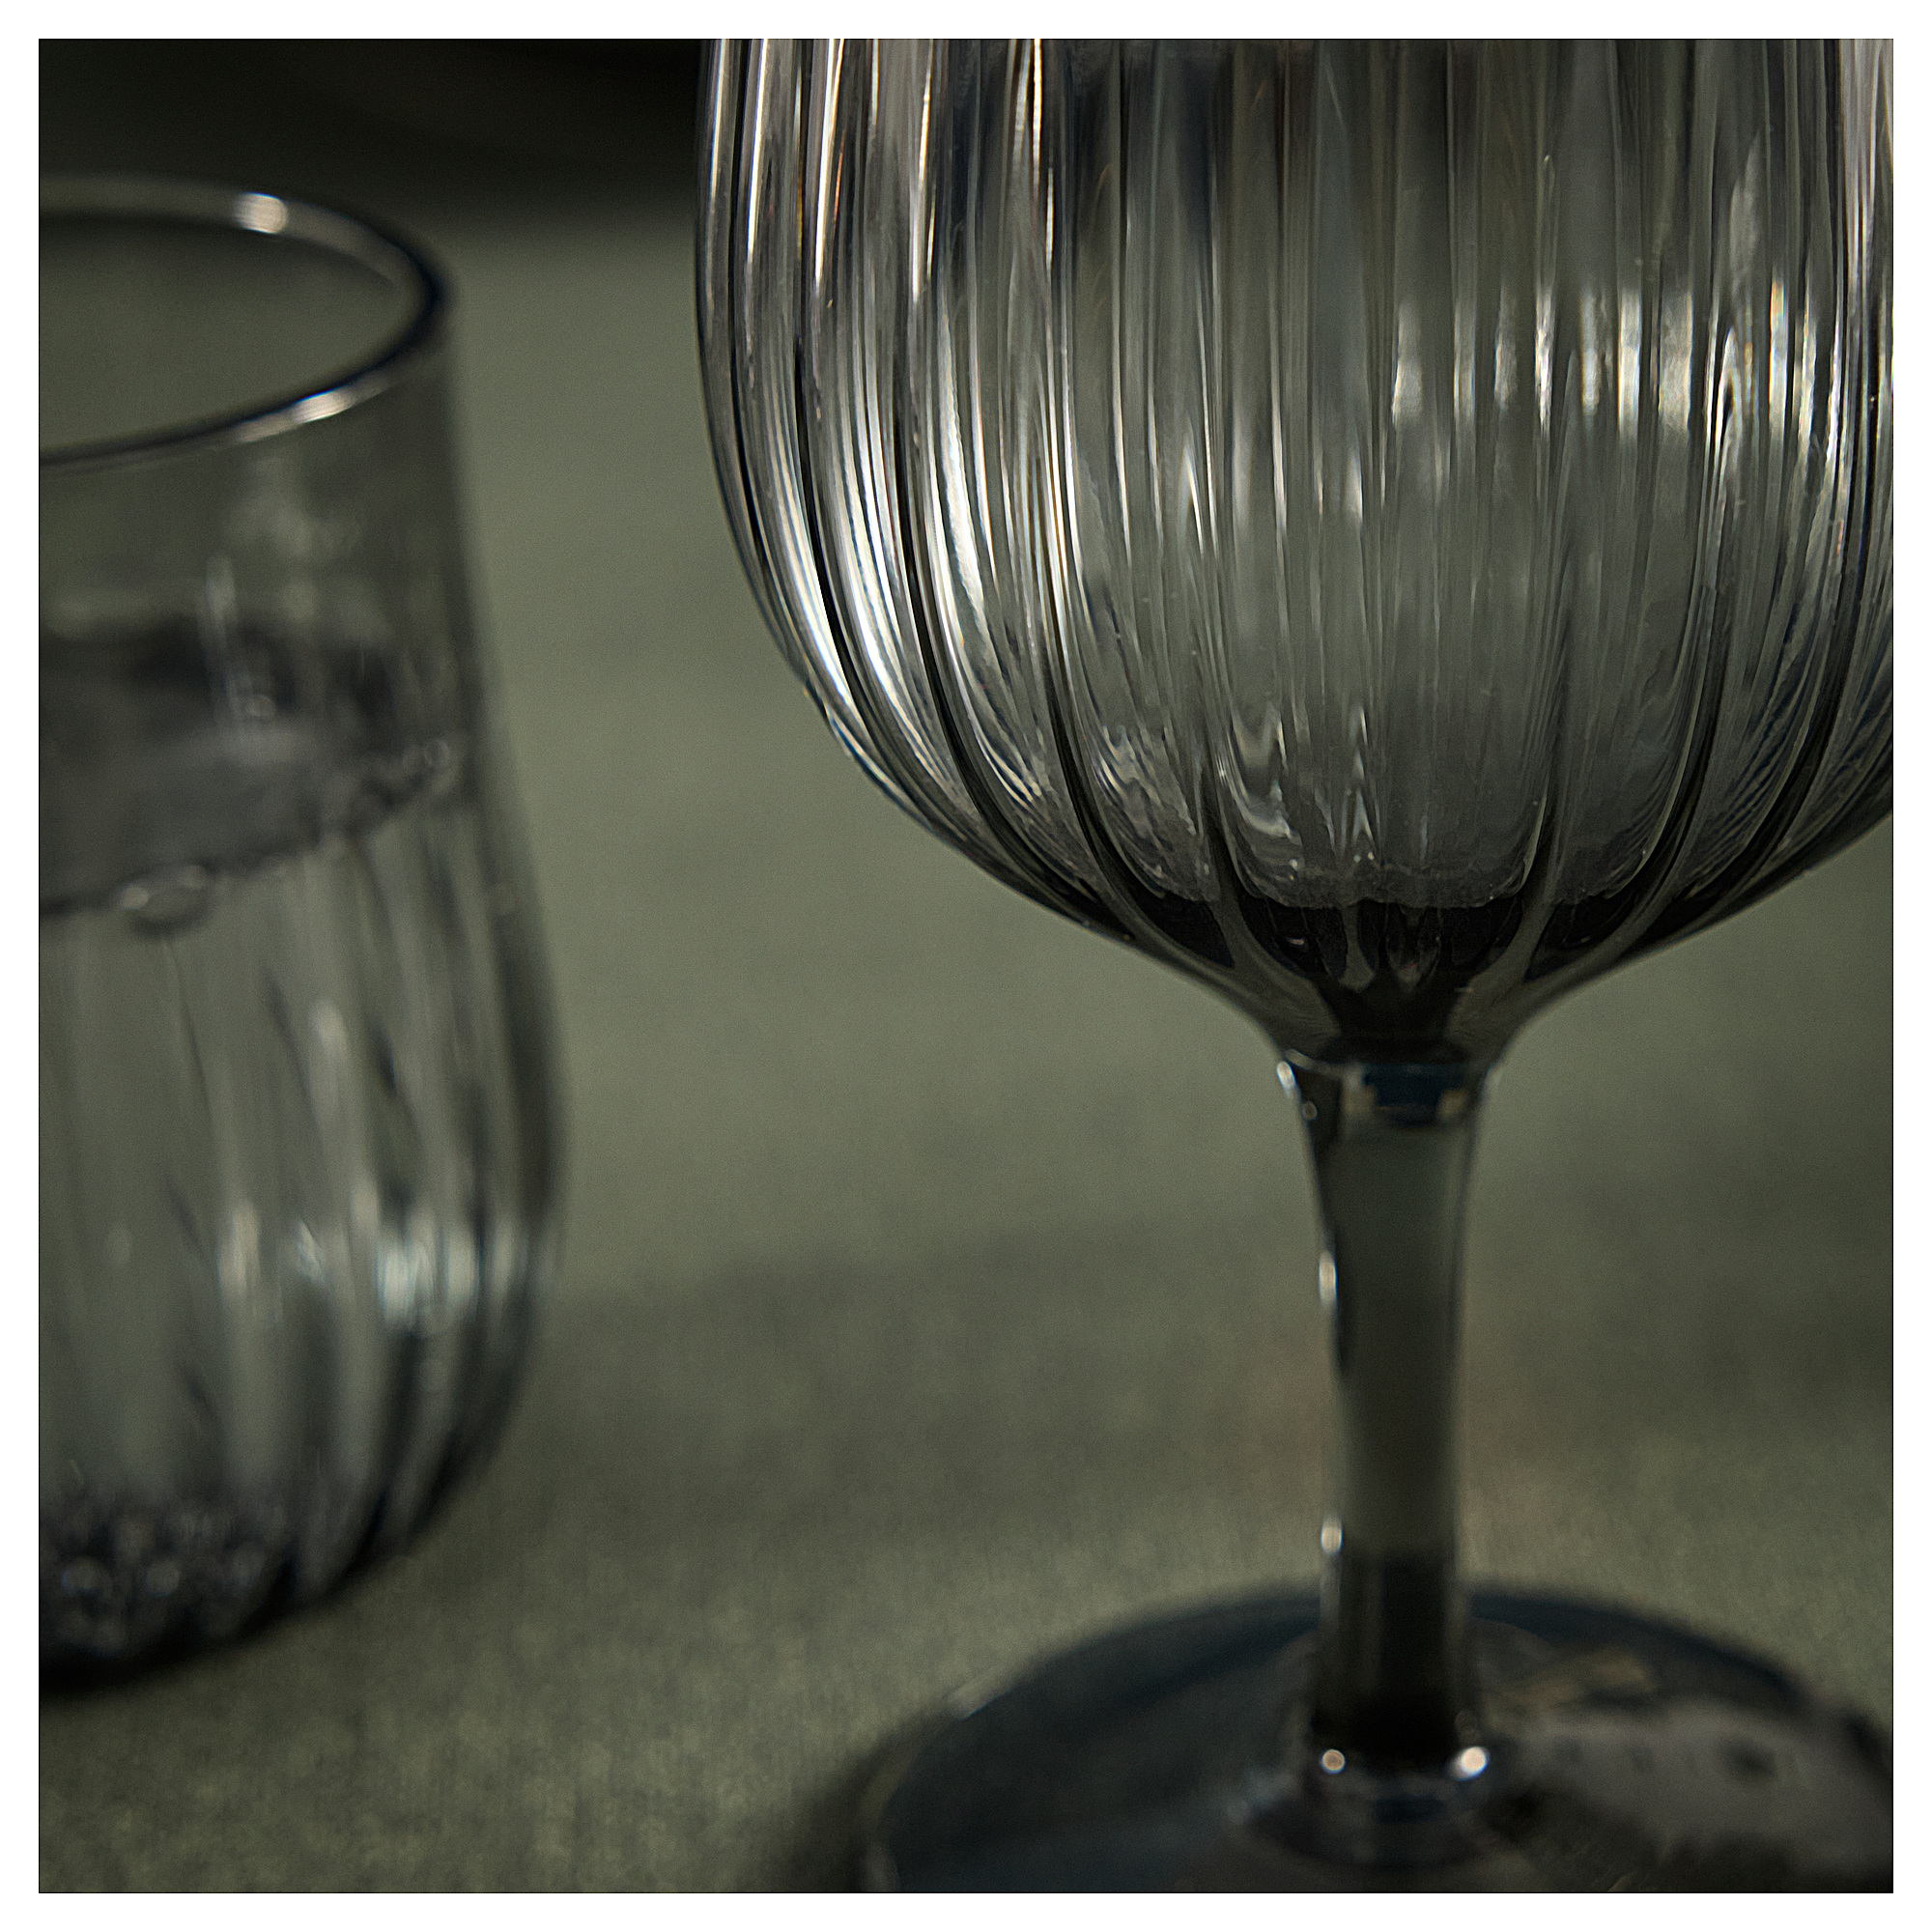 HÖSTAGILLE wine glass